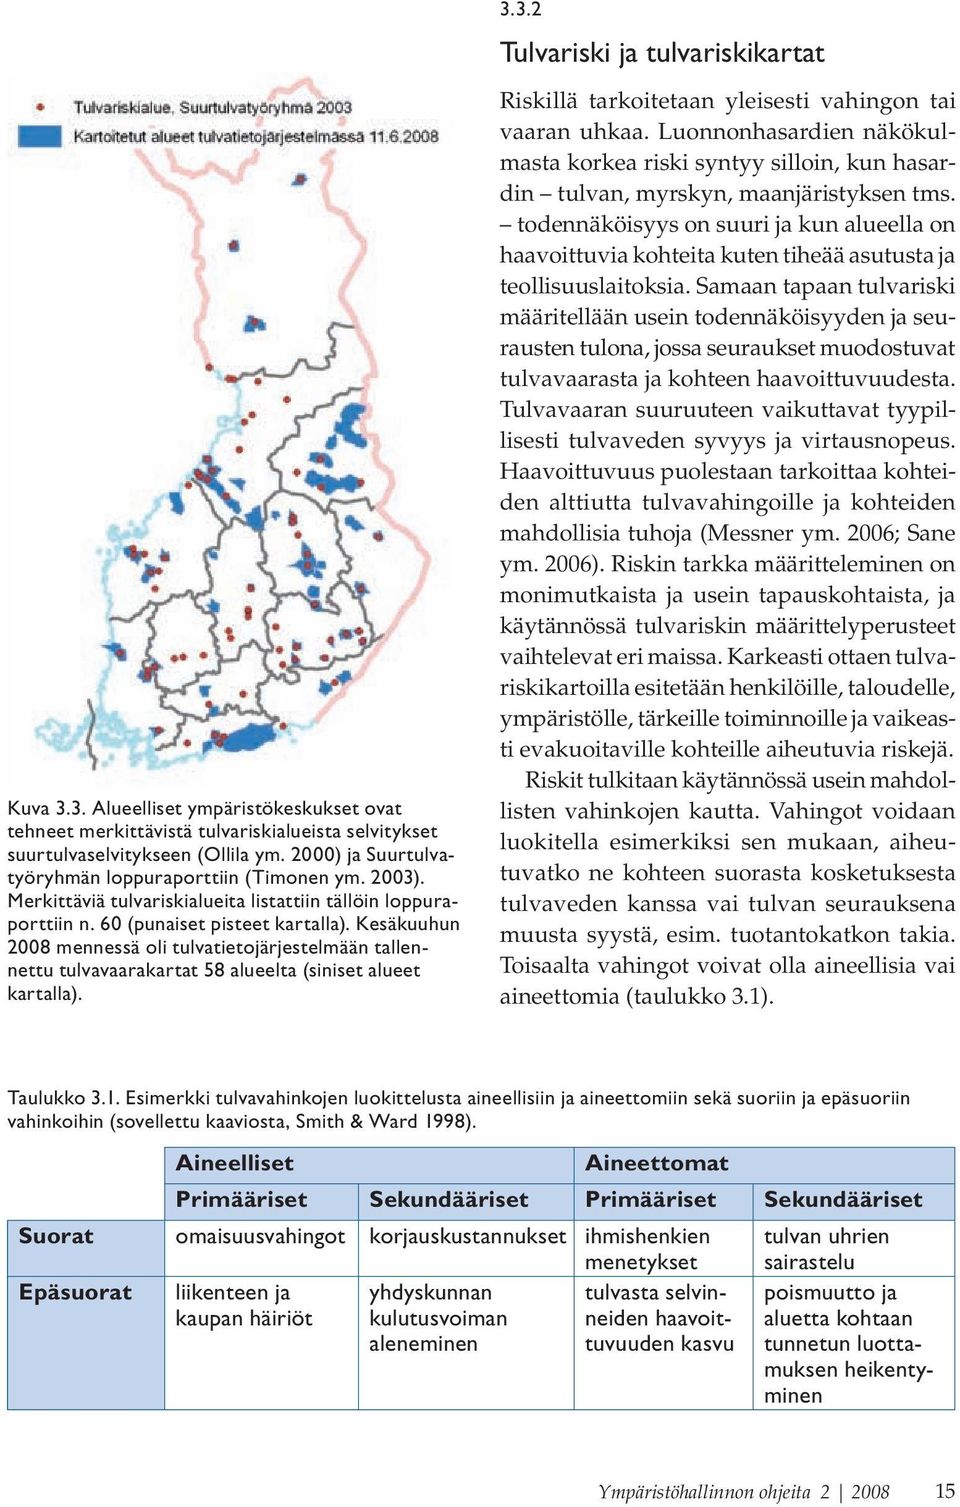 Kesäkuuhun 2008 mennessä oli tulvatietojärjestelmään tallennettu tulvavaarakartat 58 alueelta (siniset alueet kartalla). 3.